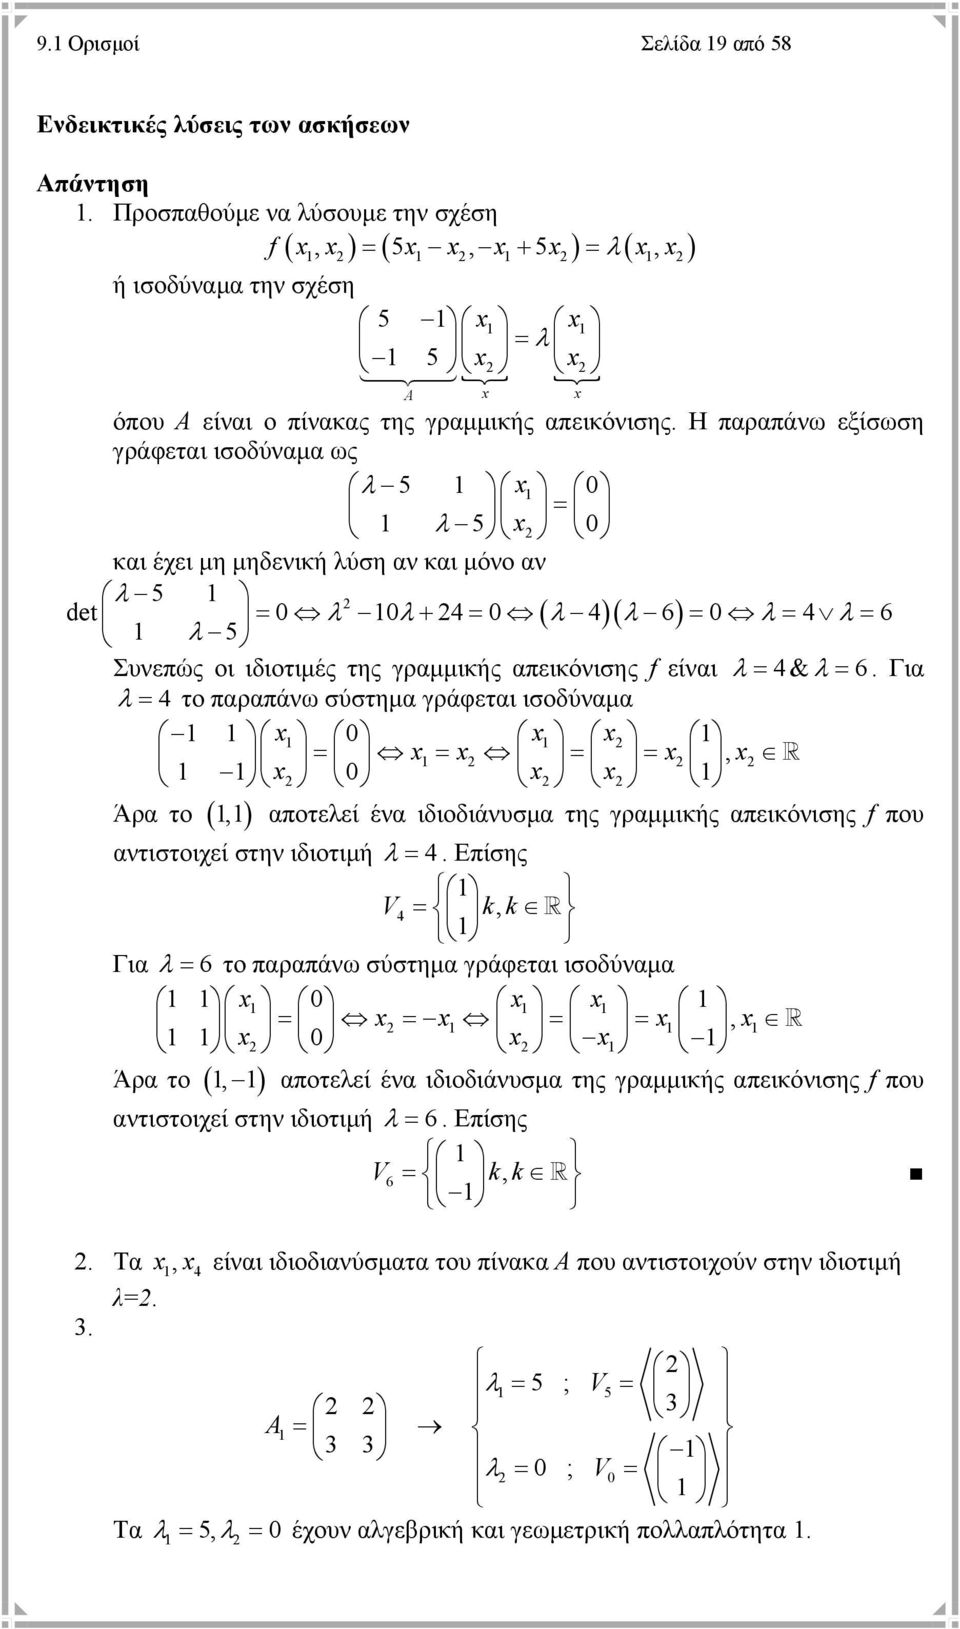 Η παραπάνω εξίσωση γράφεται ισοδύναμα ως λ 5 x 0 = λ 5 x 0 και έχει μη μηδενική λύση αν και μόνο αν λ 5 det = 0 λ 0λ + 4 = 0 ( λ 4)( λ 6) = 0 λ = 4 λ = 6 λ 5 Συνεπώς οι ιδιοτιμές της γραμμικής